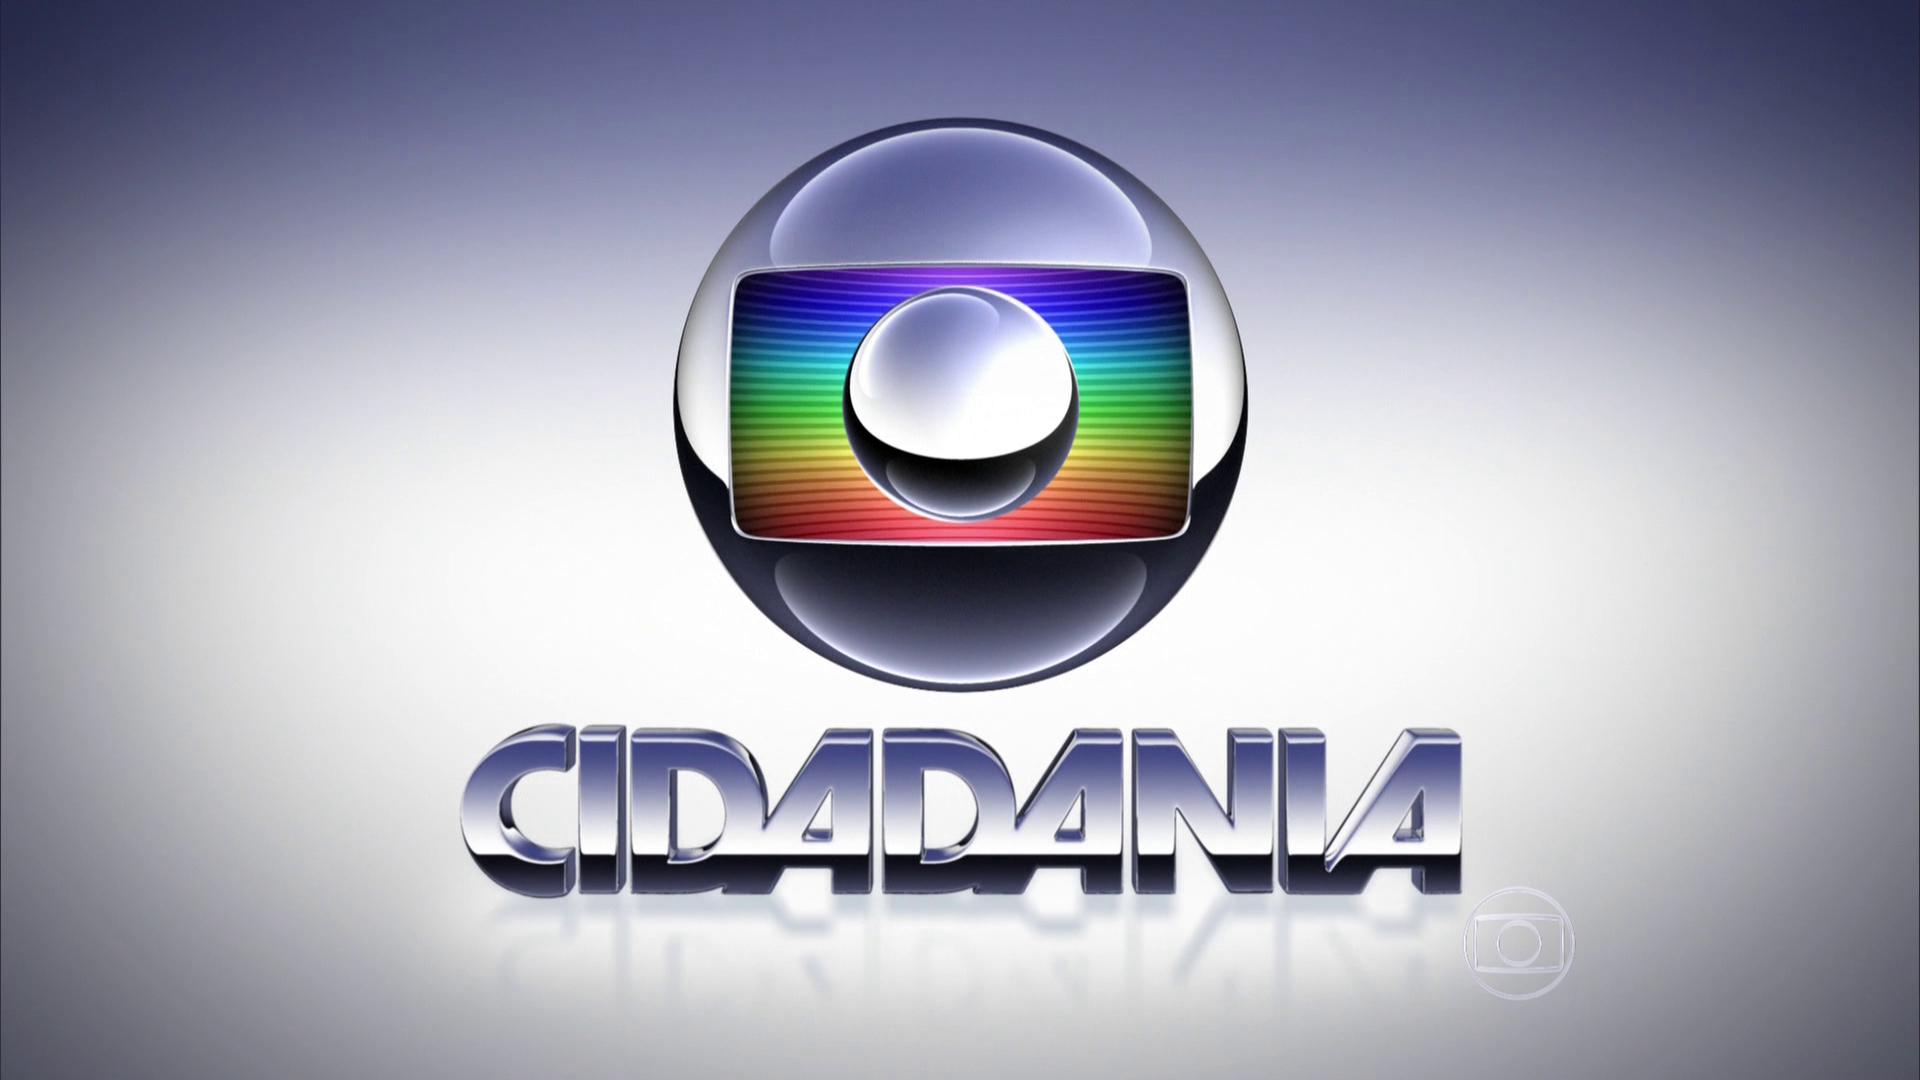 Globo Cidadania | Rede Globo Logopedia 2 Wiki | FANDOM powered by Wikia